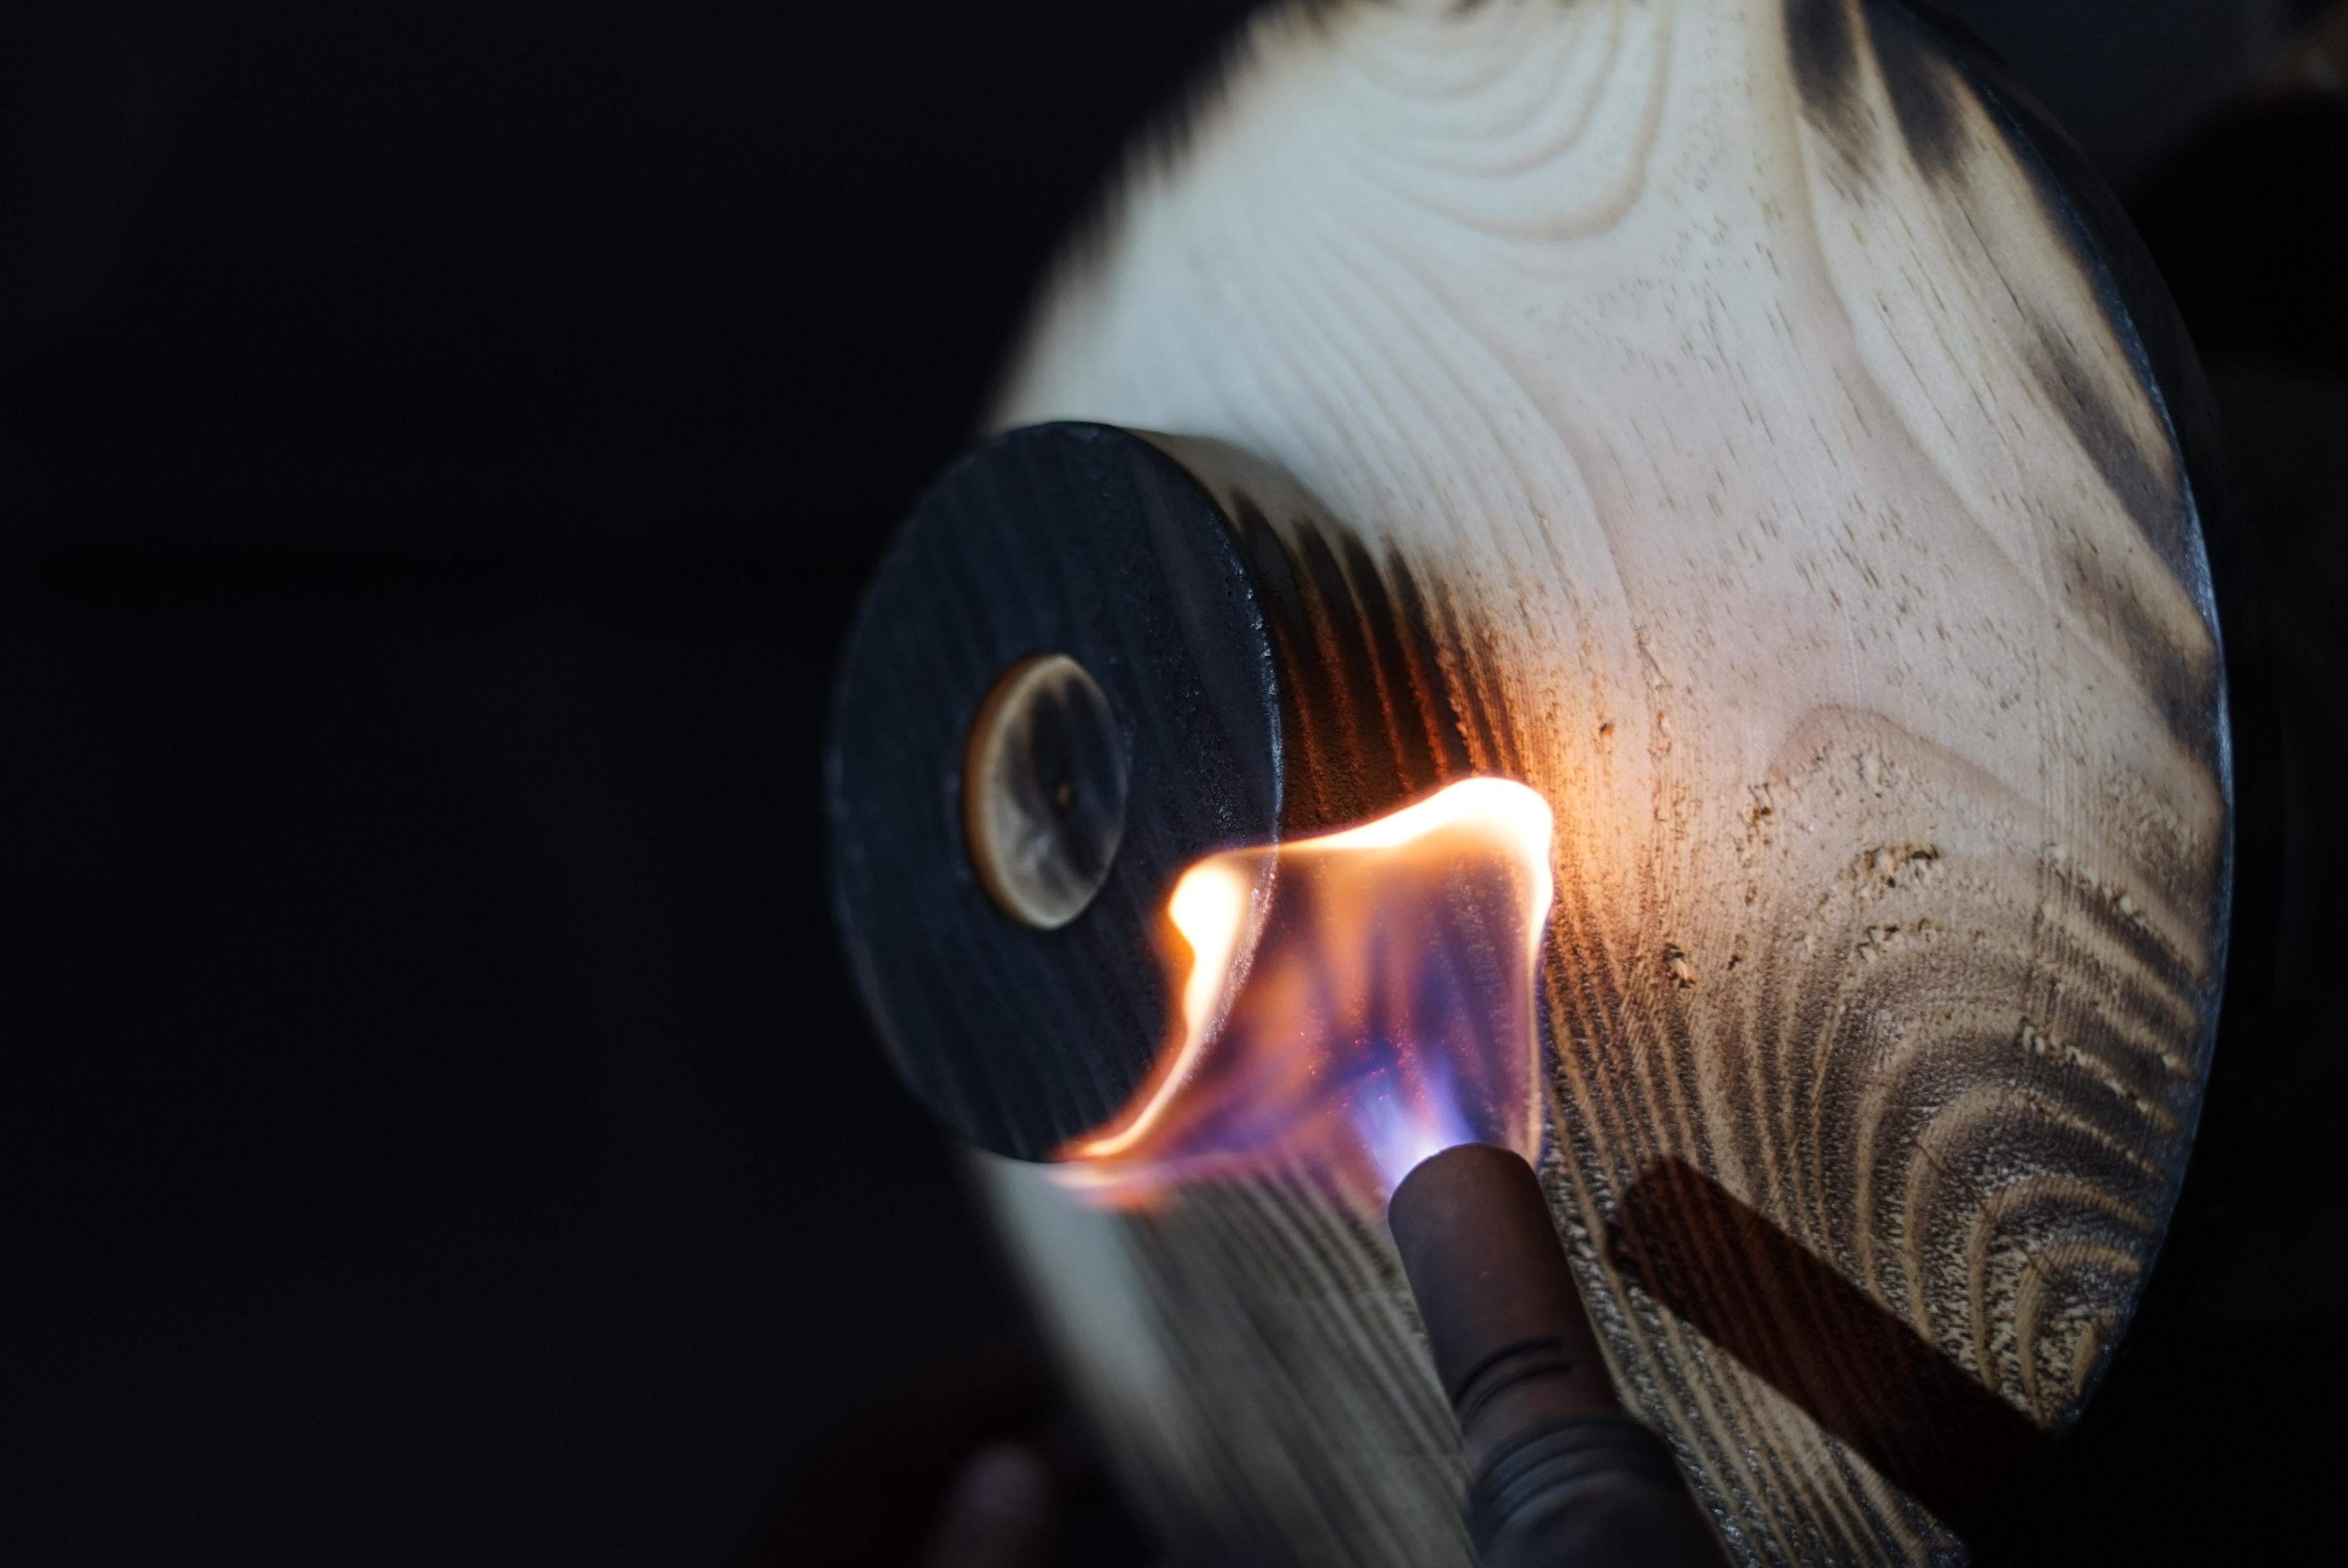 Turned Pyrolysis - Burnt Pine Wood Fruit Bowl by Samuel Reis Handmade in Portugal